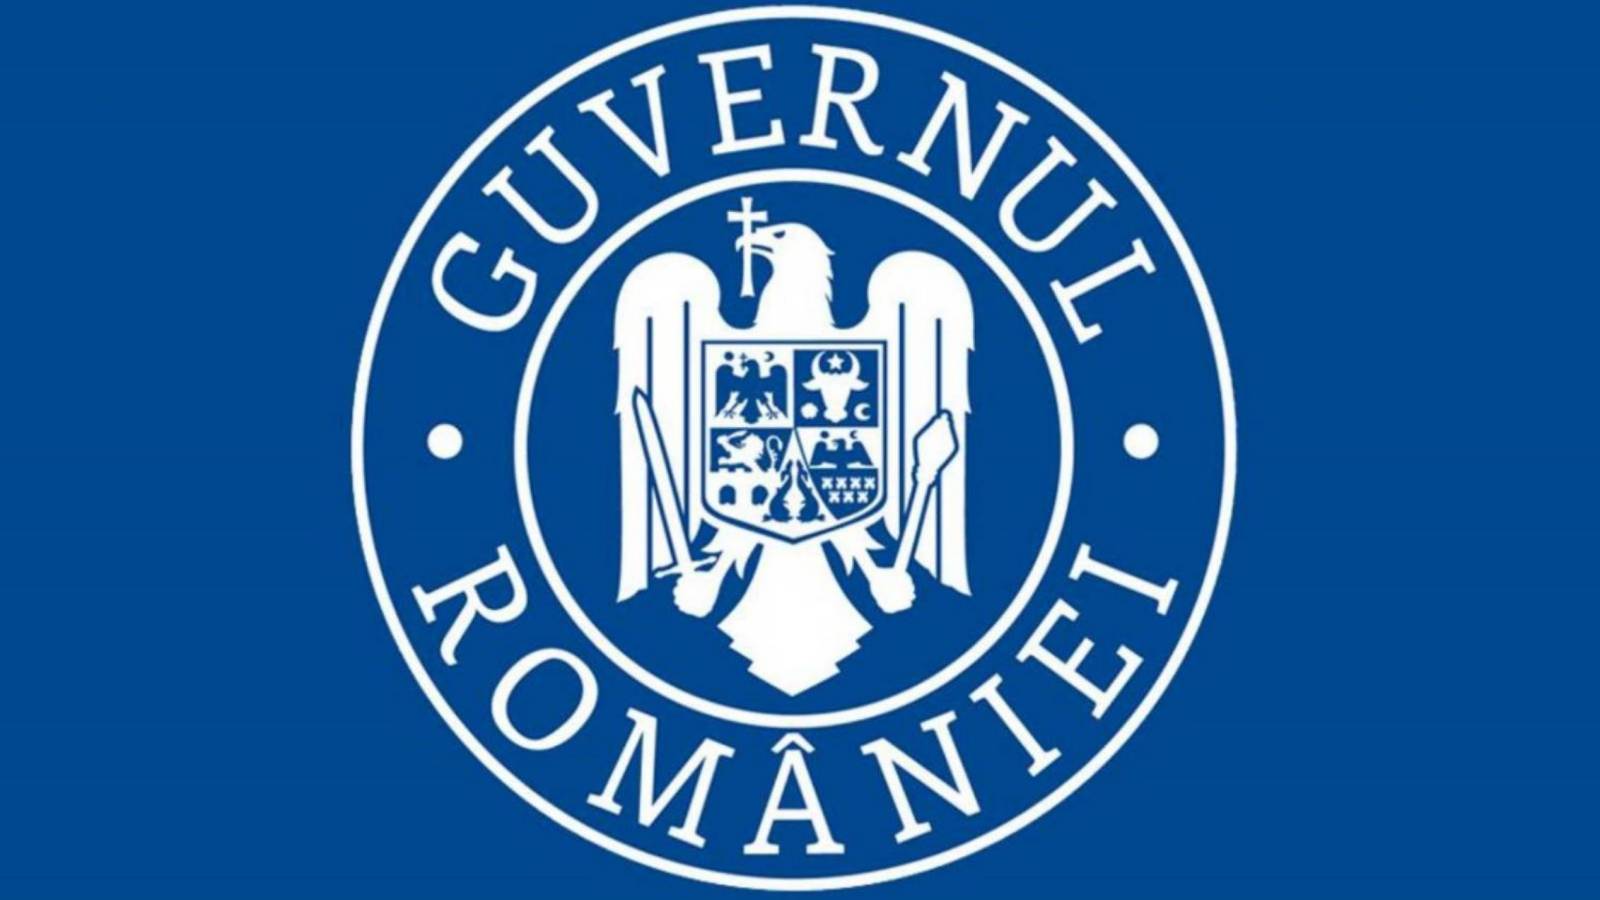 Oświadczenie rządu Rumunii o powrocie do normalności